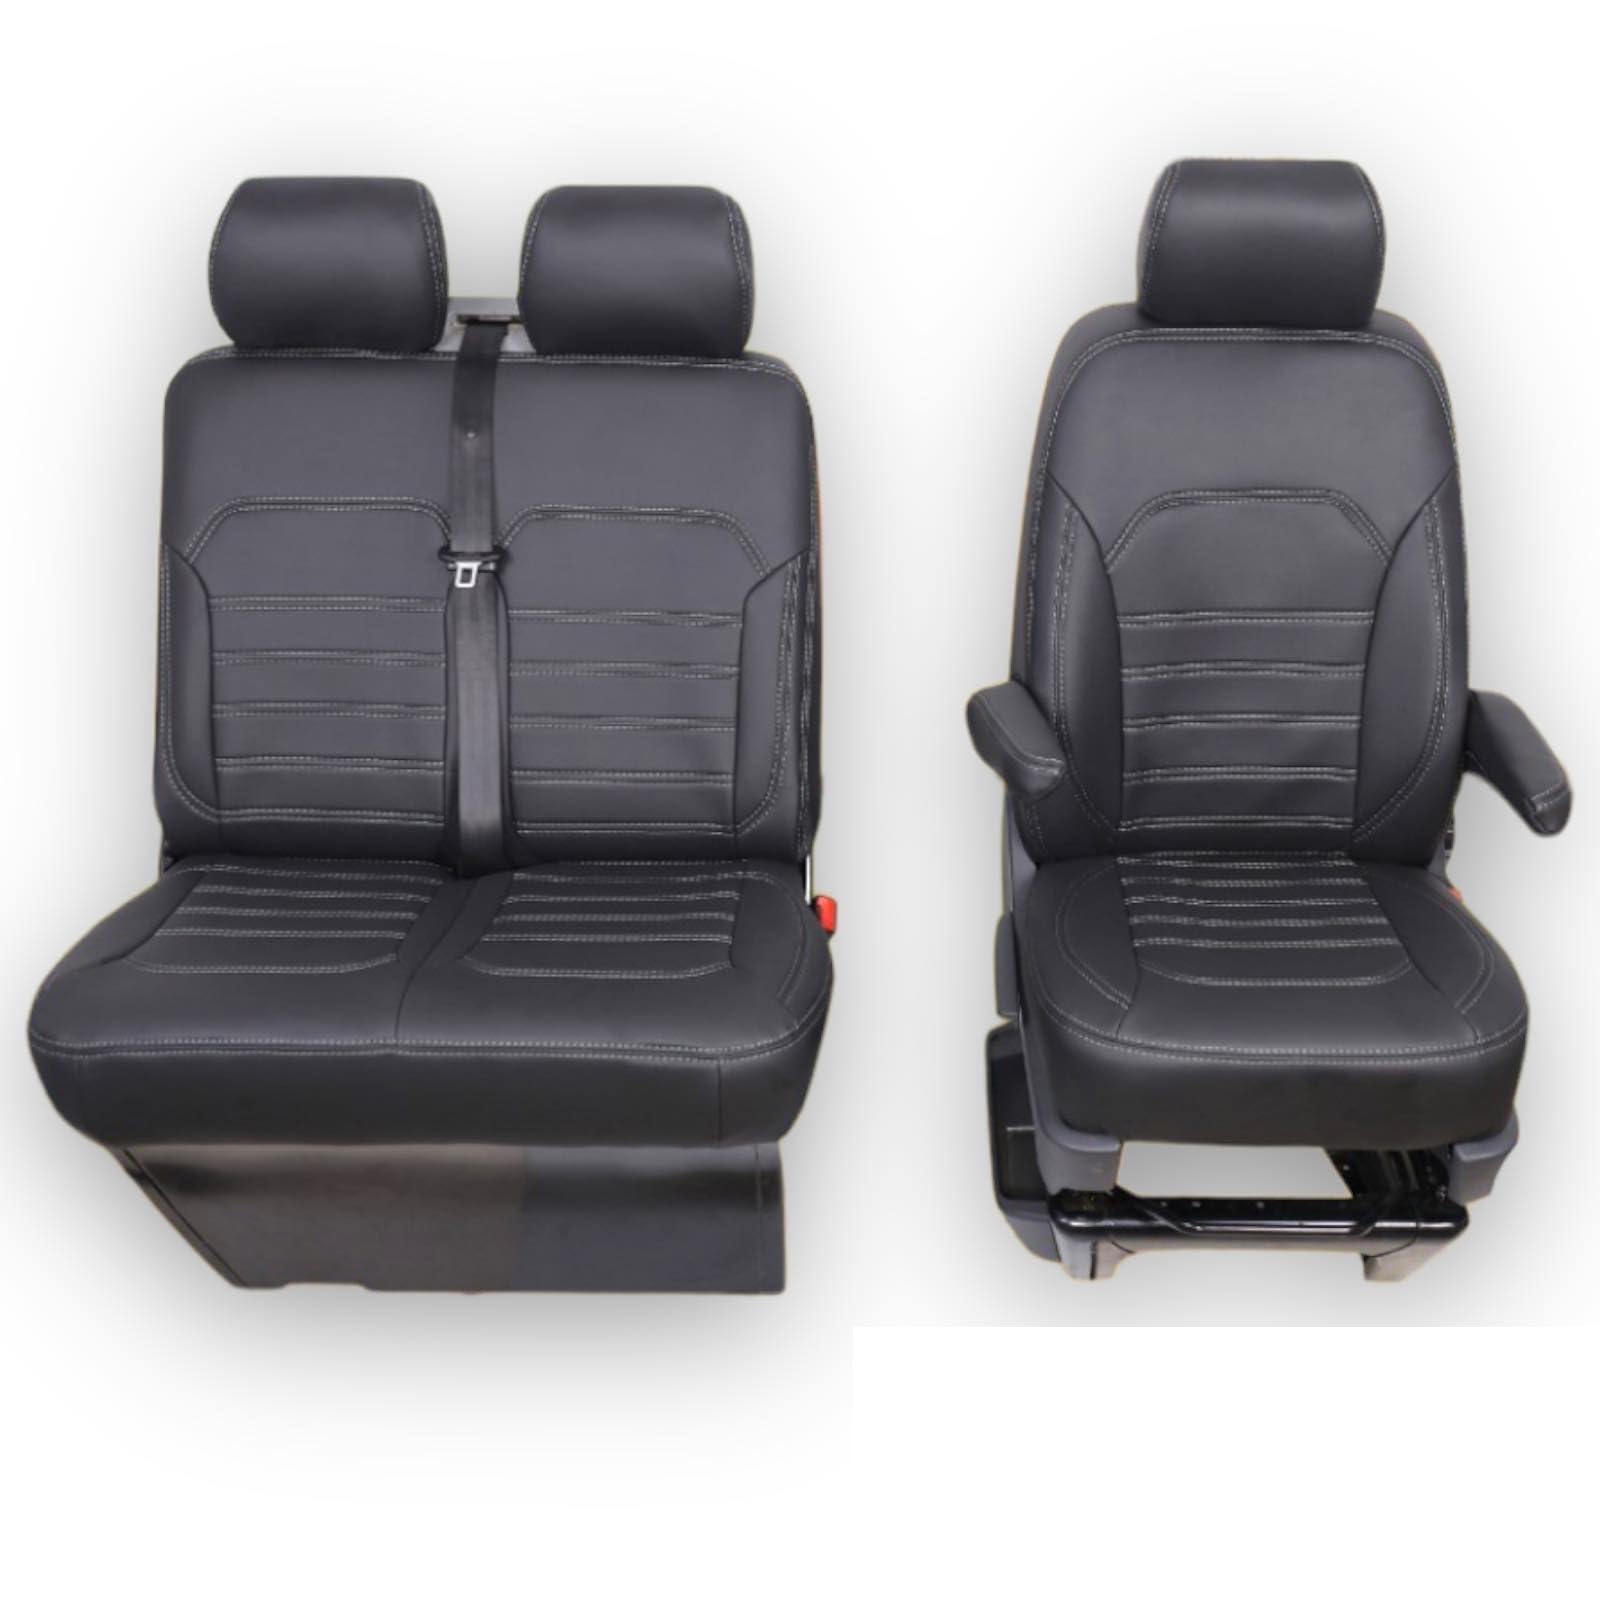 Maß Sitzbezüge 2+1 Schonbezüge Sitzbezug Kunstleder passend für Ford Transit Nissan NV400 Vauxhall Movano Renault Master Bj. 2006-2013 schwarz mit weißen Nähten E-Parts24 von eparts24